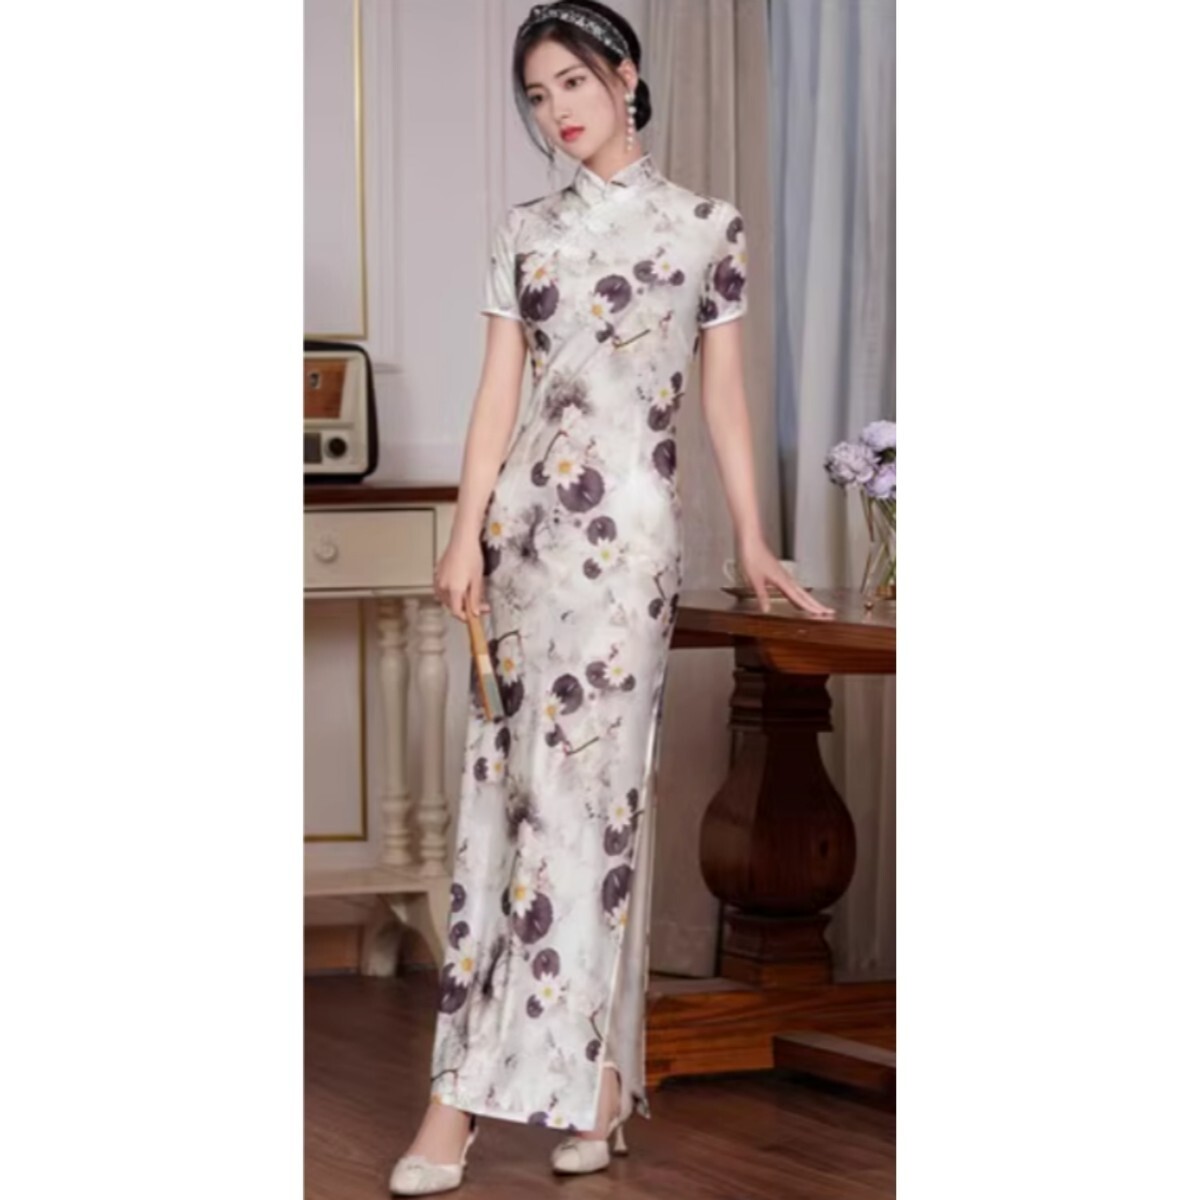  платье в китайском стиле сорочка kyaba платье коричневый ina одежда новый товар костюмы большой размер 5XL 6L размер 